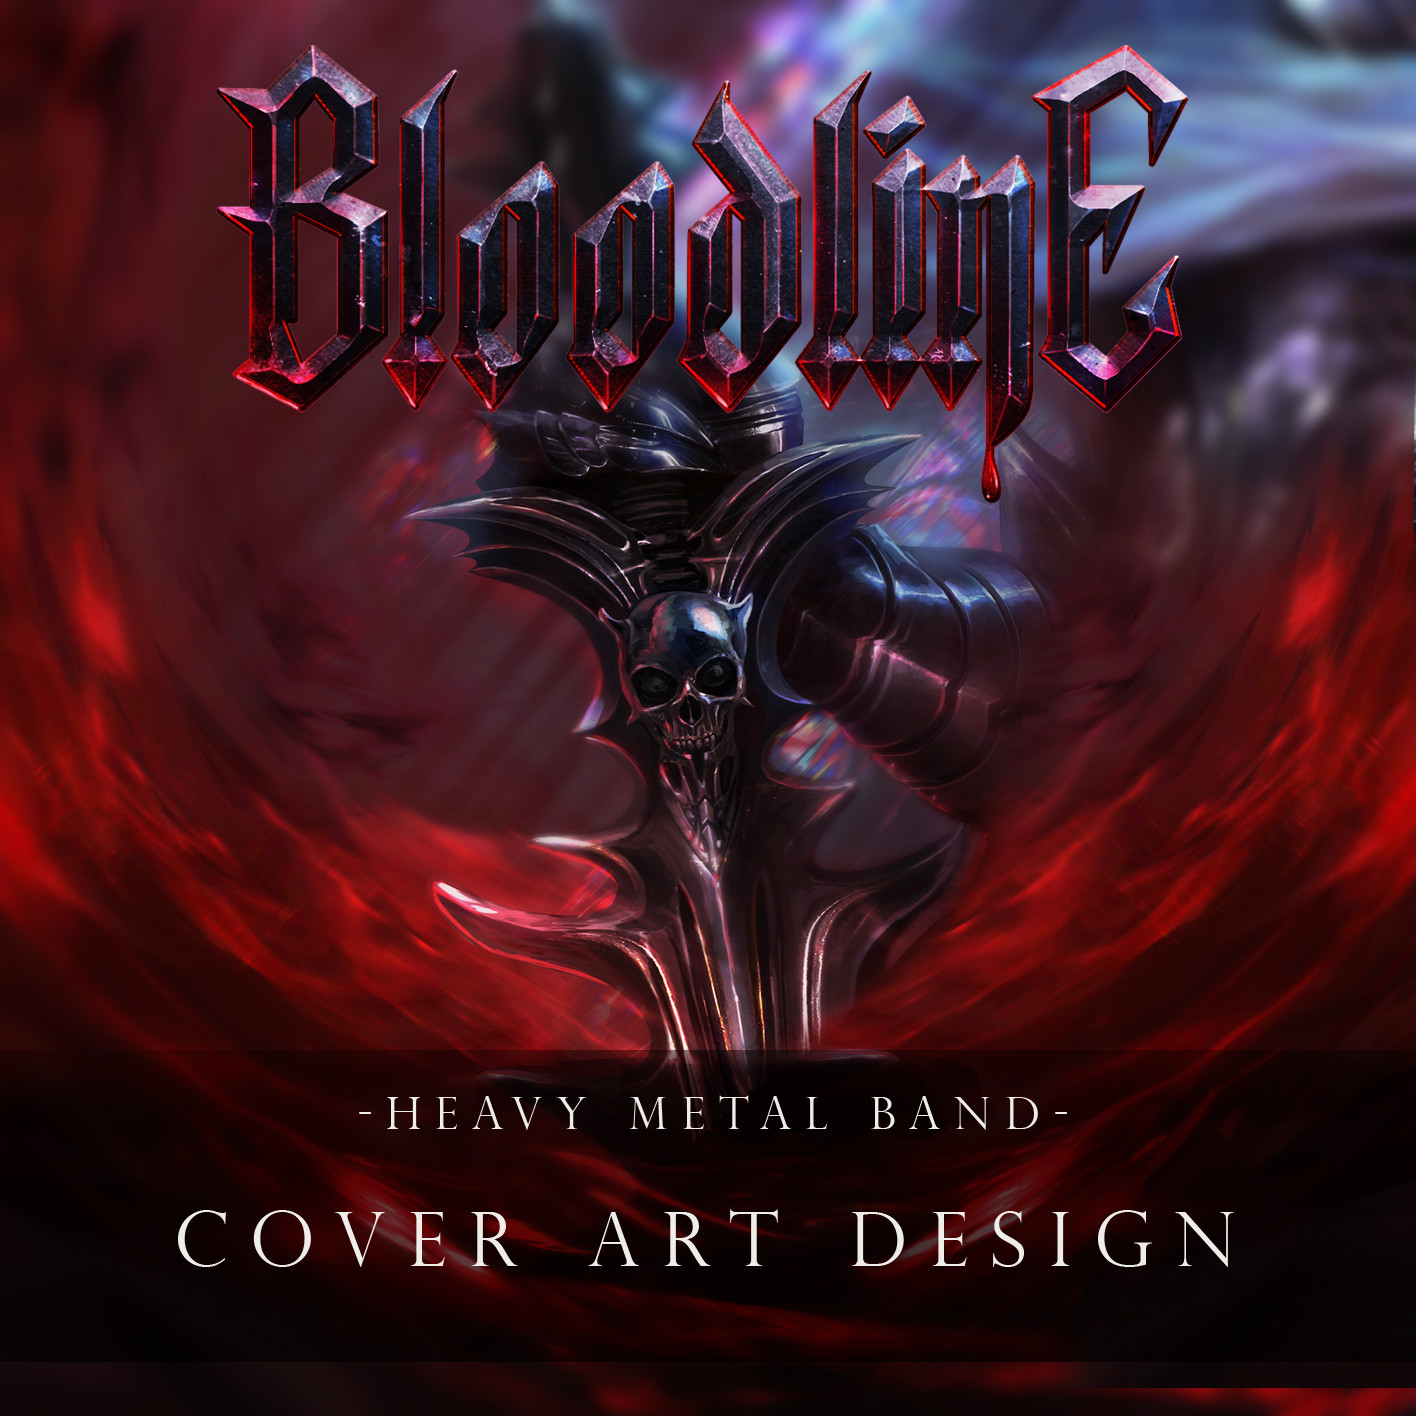 Bloodline band- Artwork